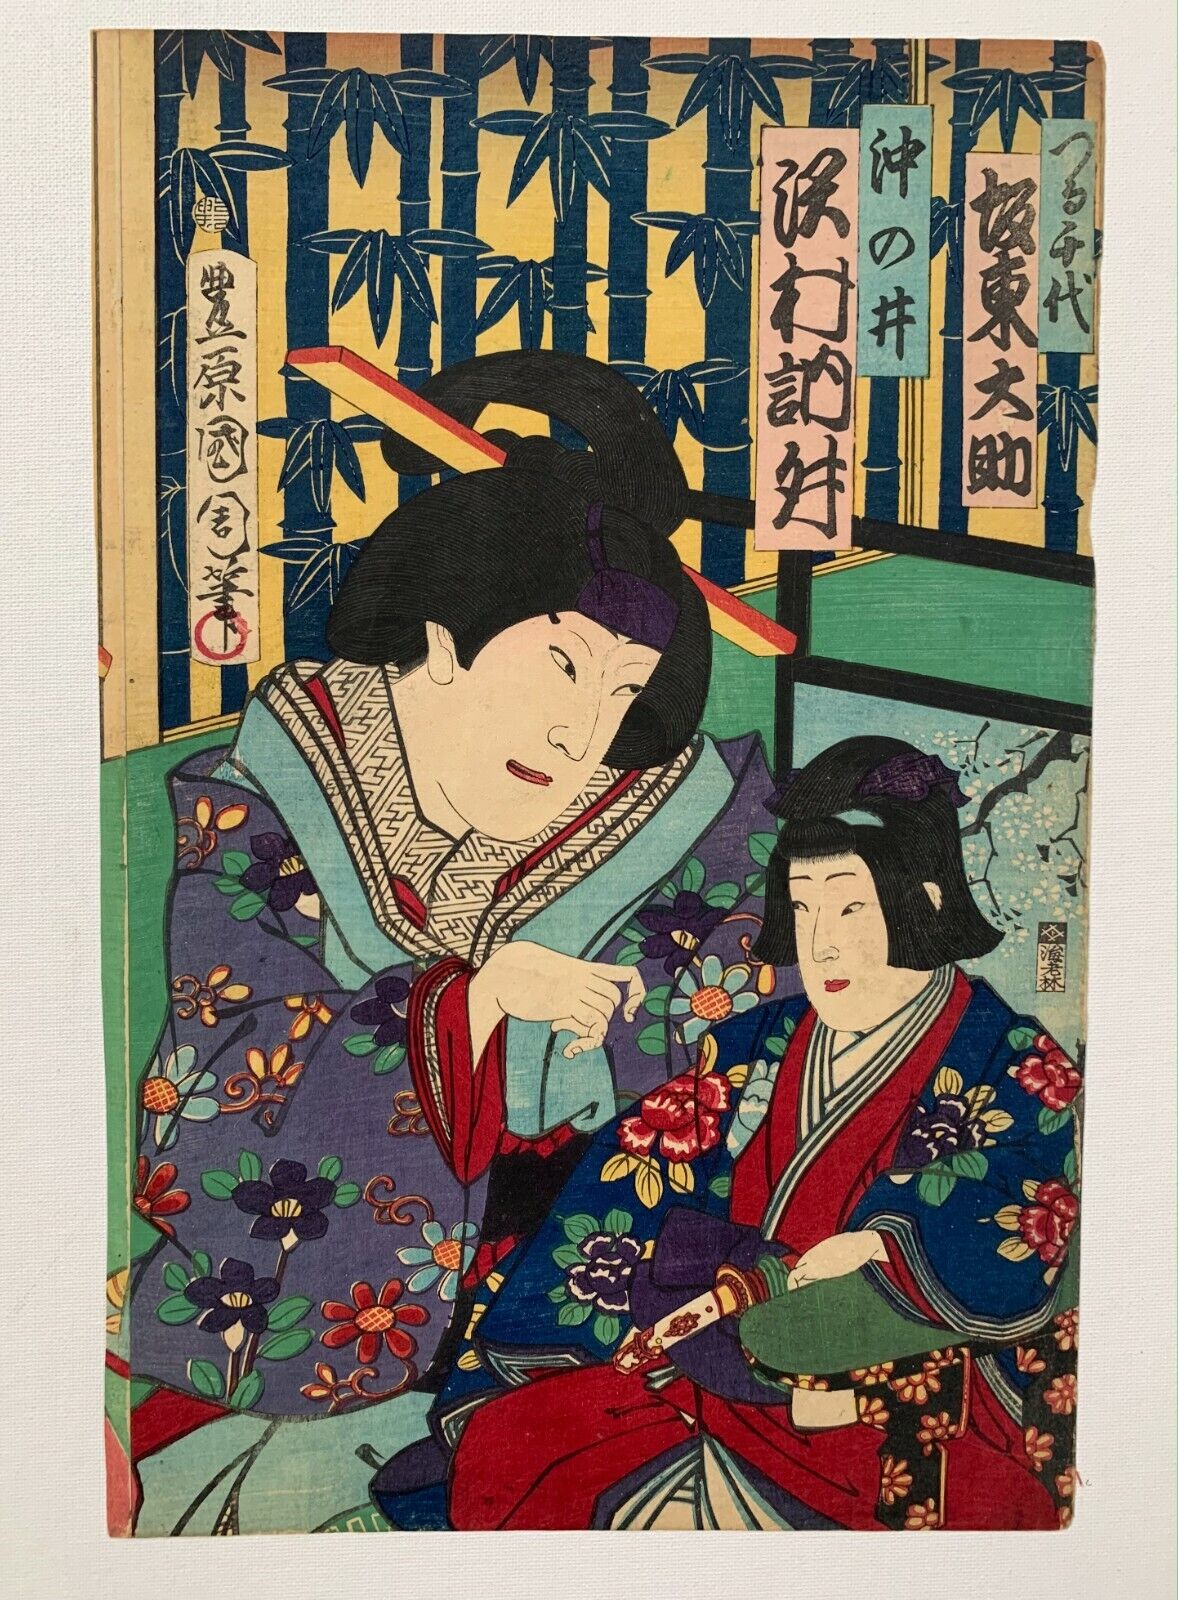 Original Toyohara Kunichika Signed Japanese Woodblock Meiji Print (1850-1899)